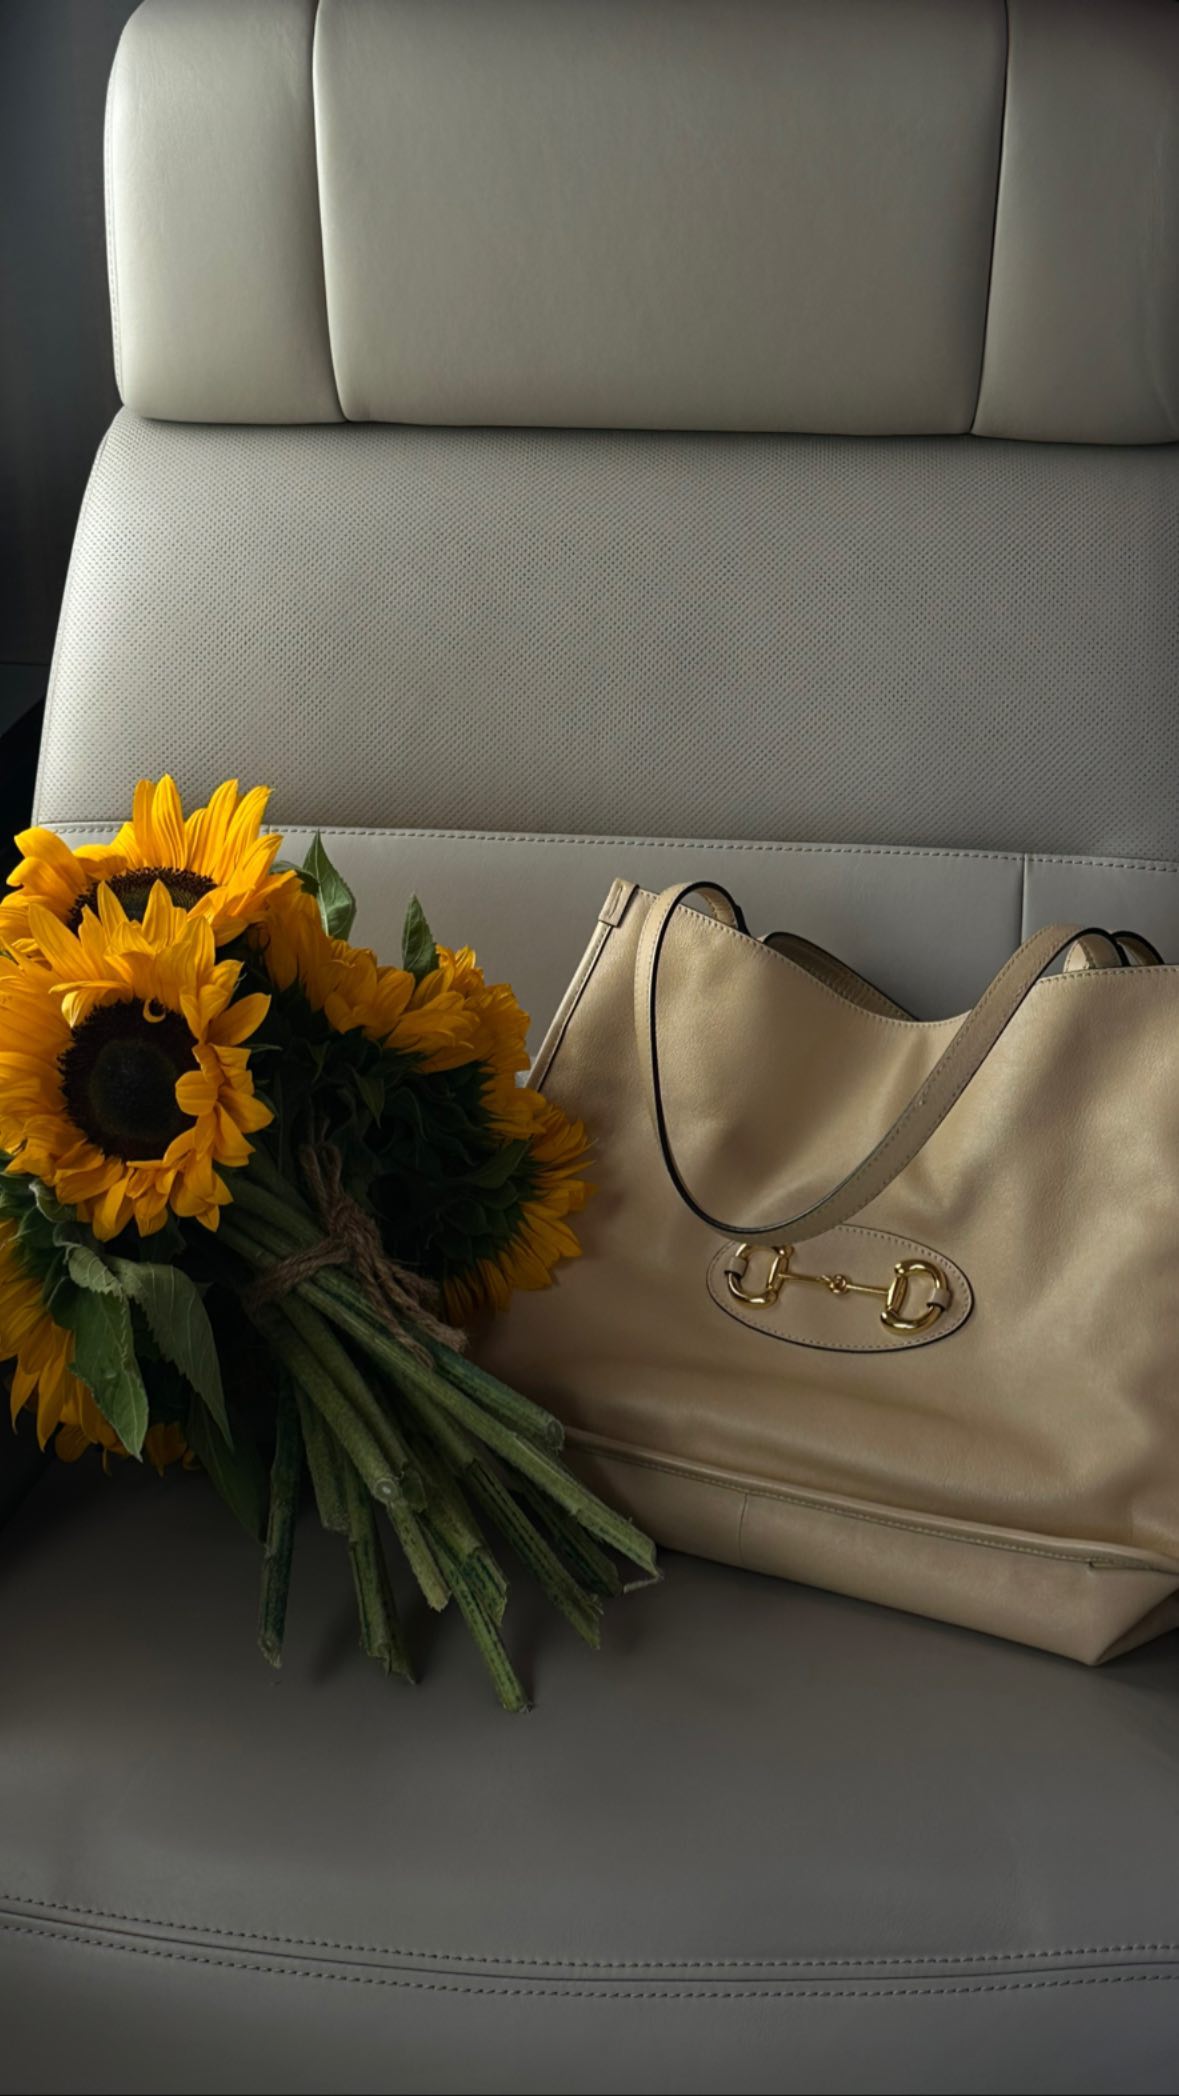 Kendall showed off a $1.3K vintage Gucci purse inside her $115K Mercedes